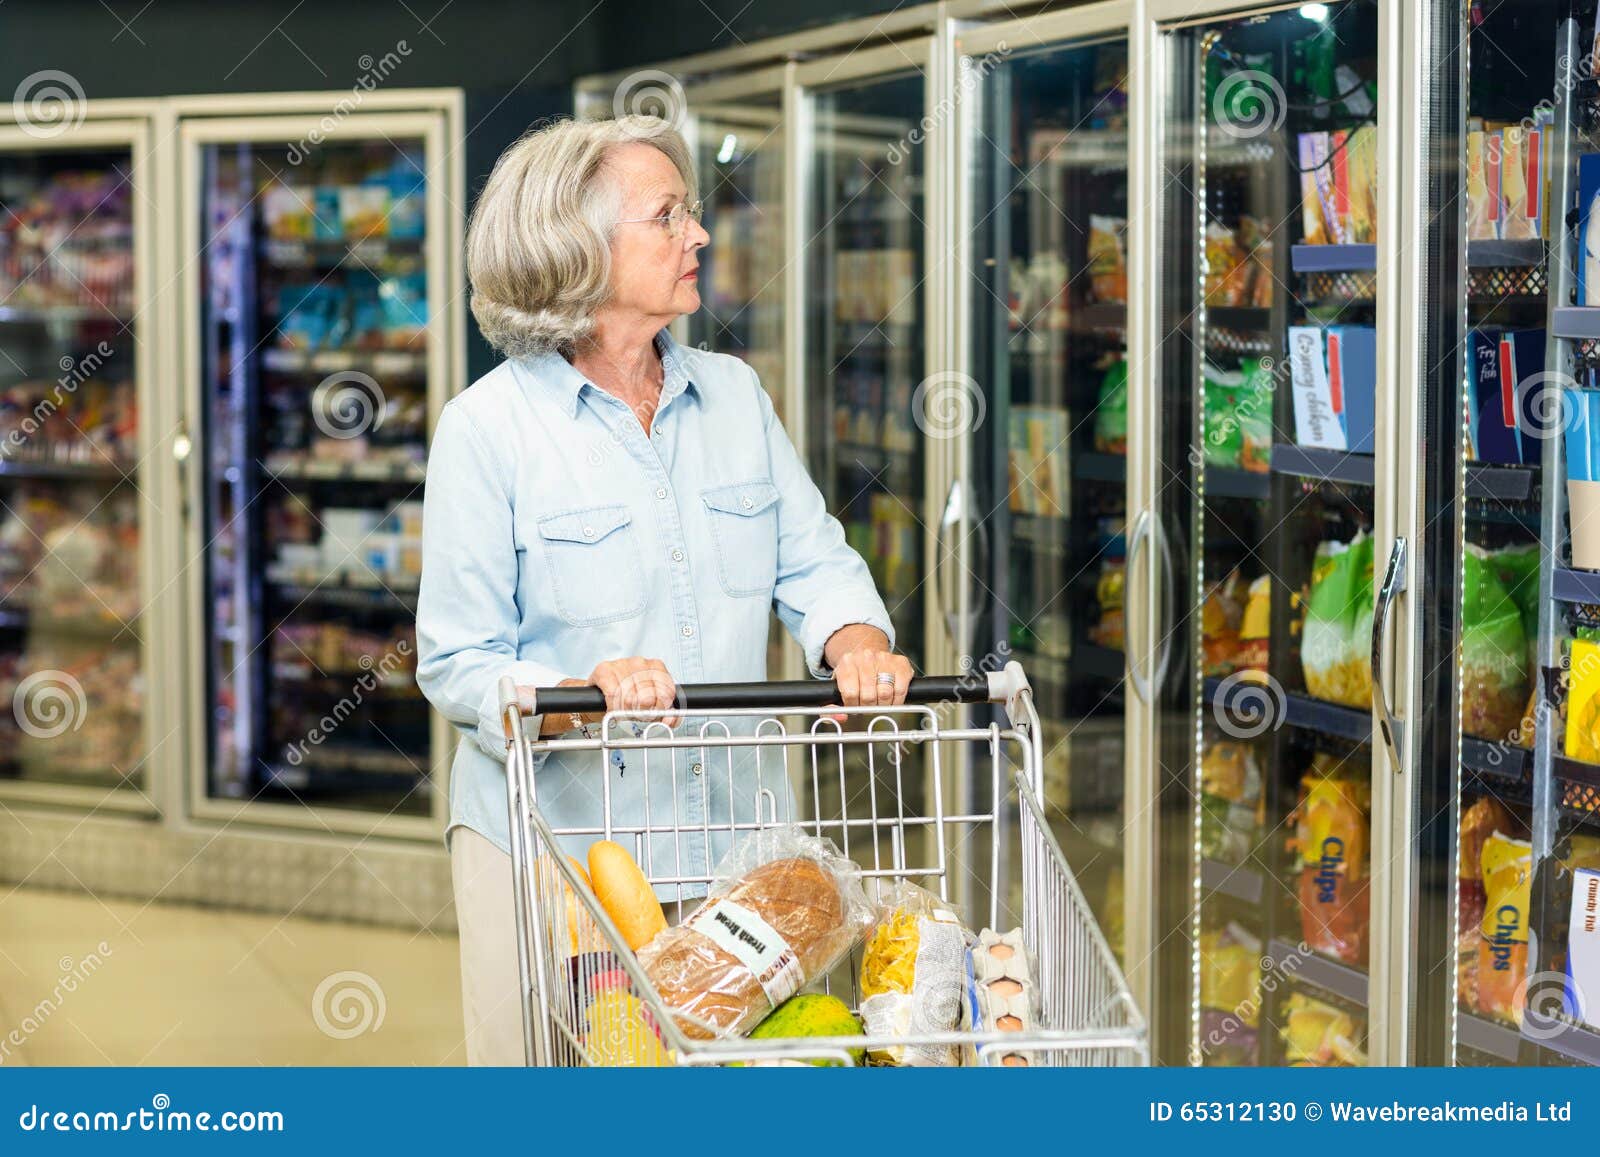 senior woman buying food